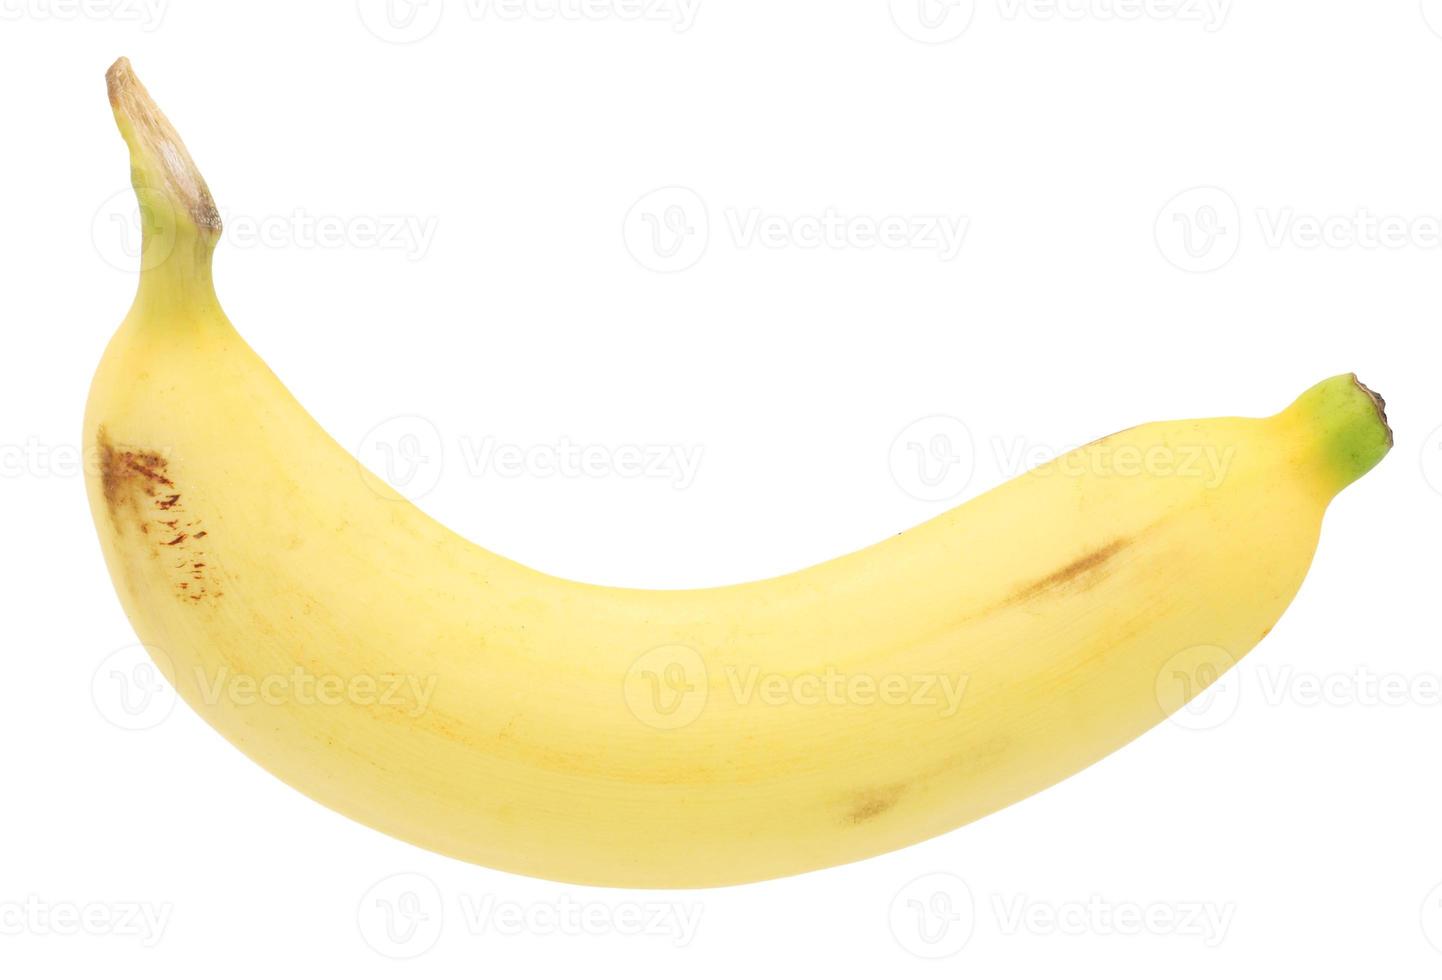 mogen banan frukt isolerad på vit bakgrund foto